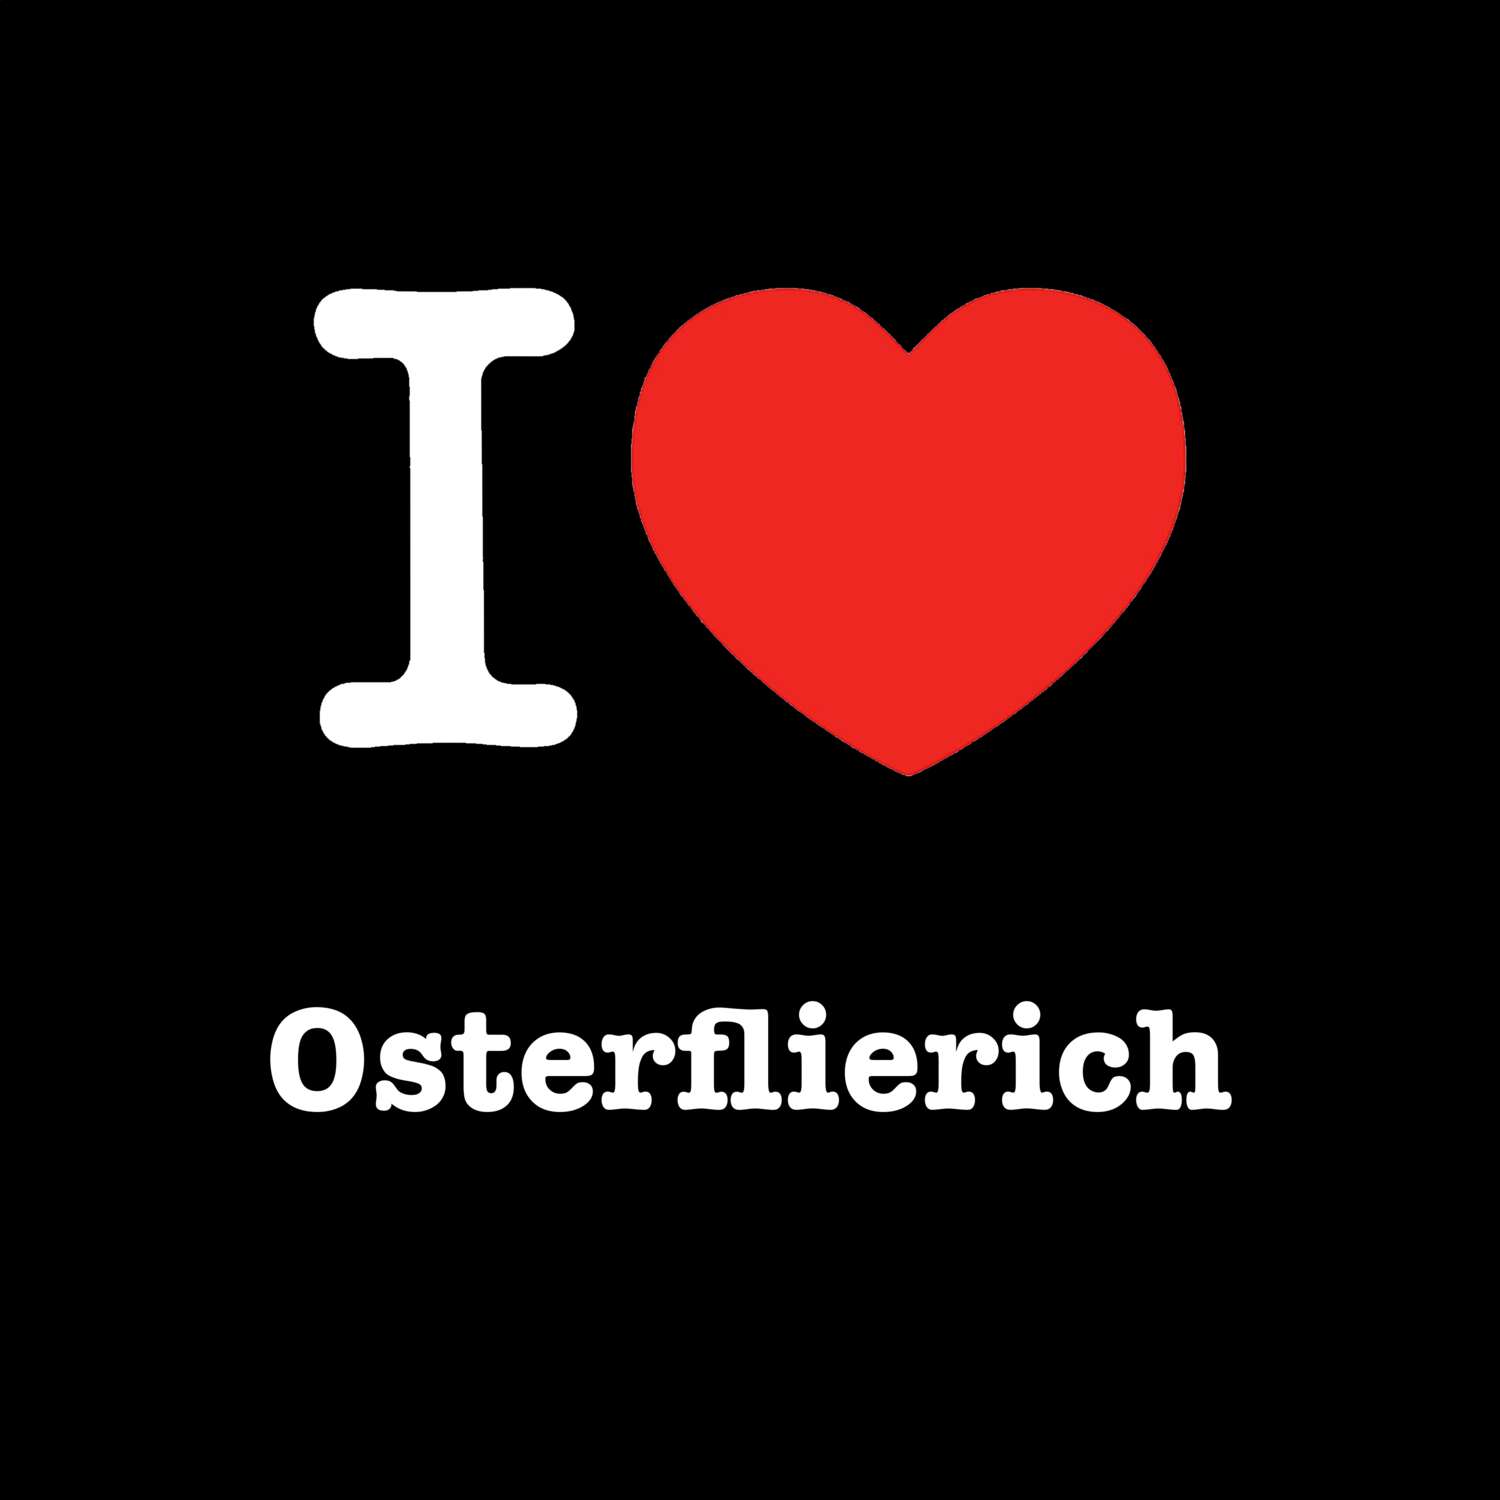 Osterflierich T-Shirt »I love«